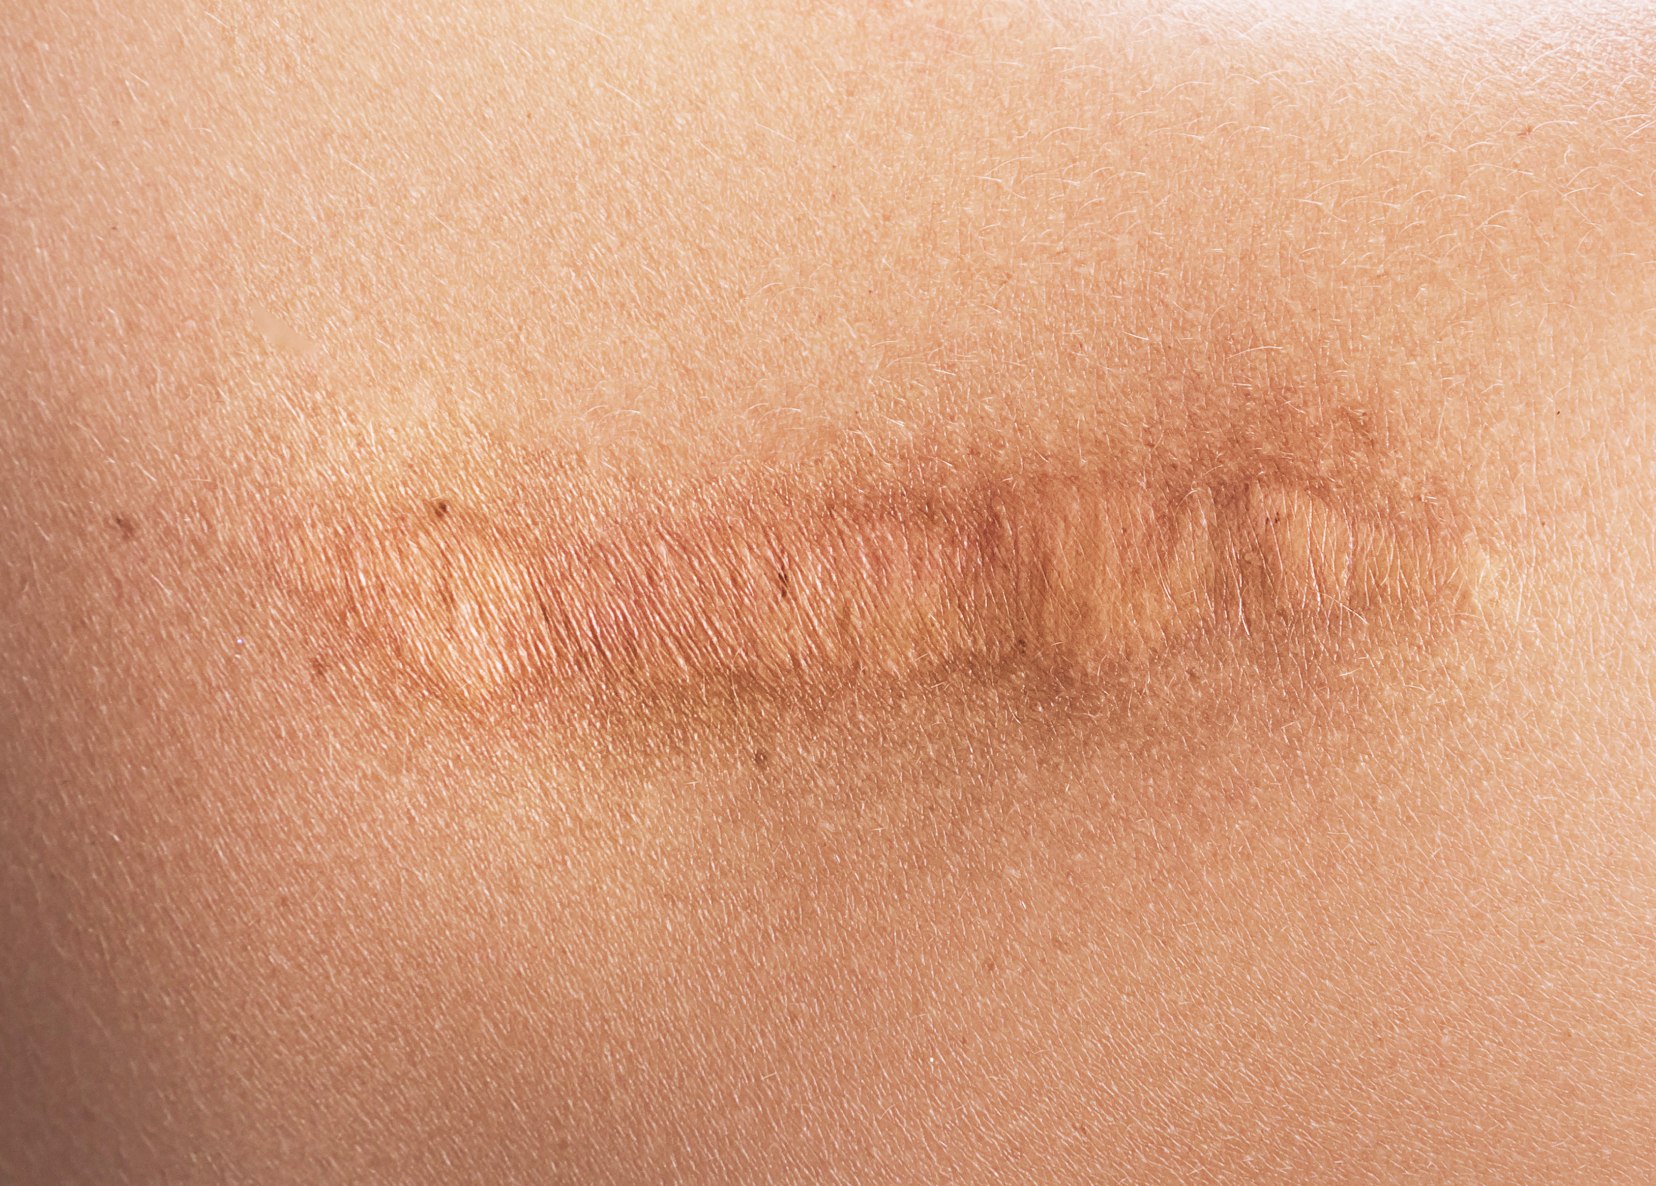 Cicatrices | Laser vasculaire cicatrice | Médecine esthétique | Dr Paitel | Le Cannet-des-Maures